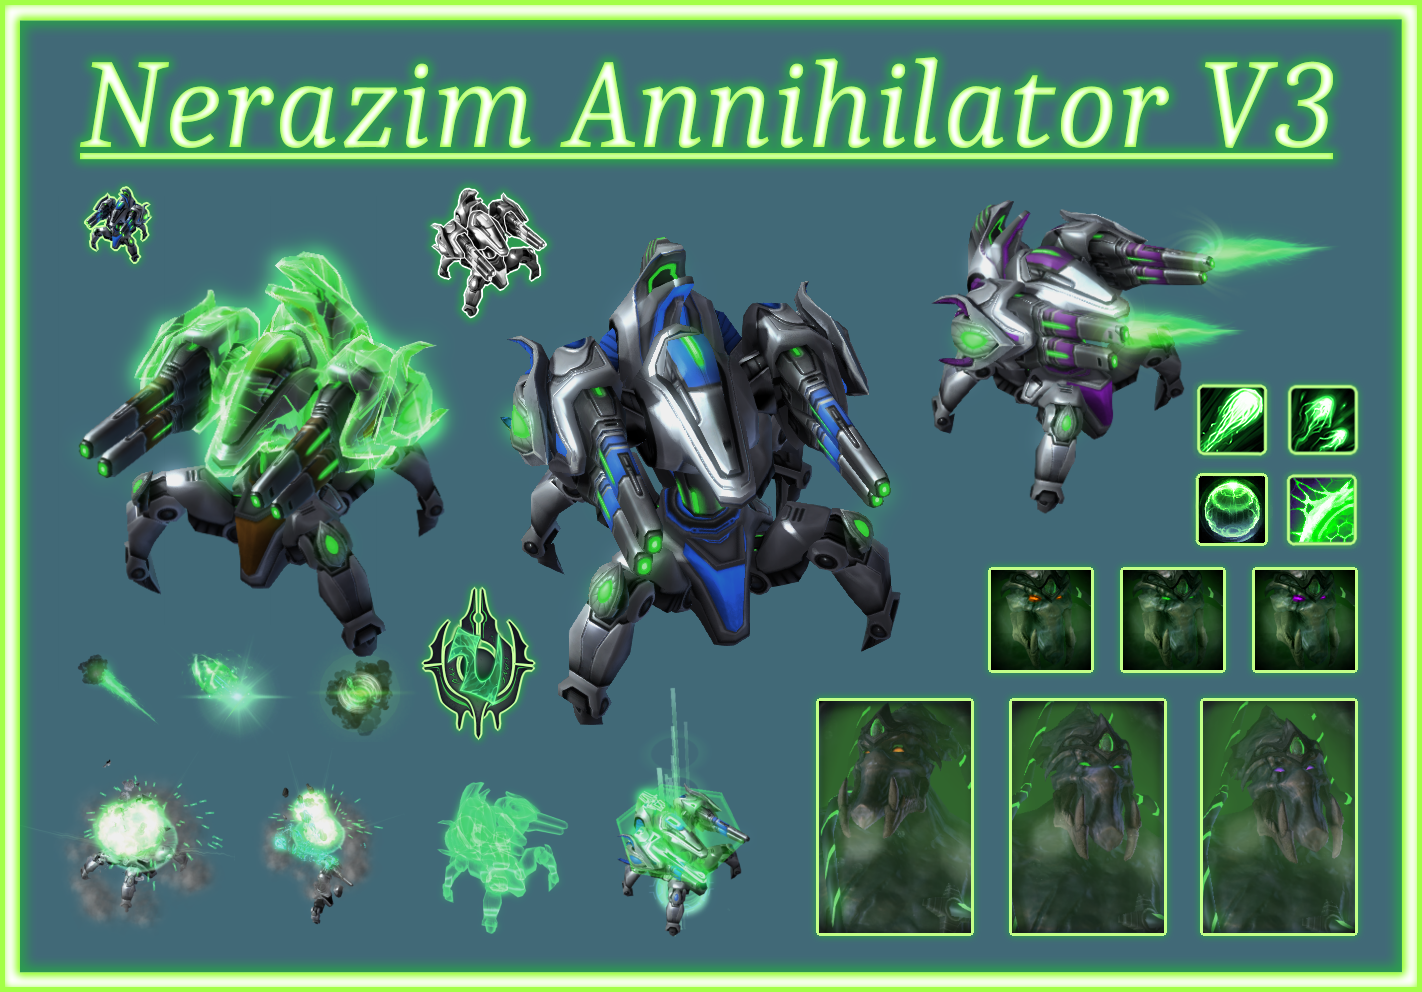 Nerazim Annihilator (Immortal) V3